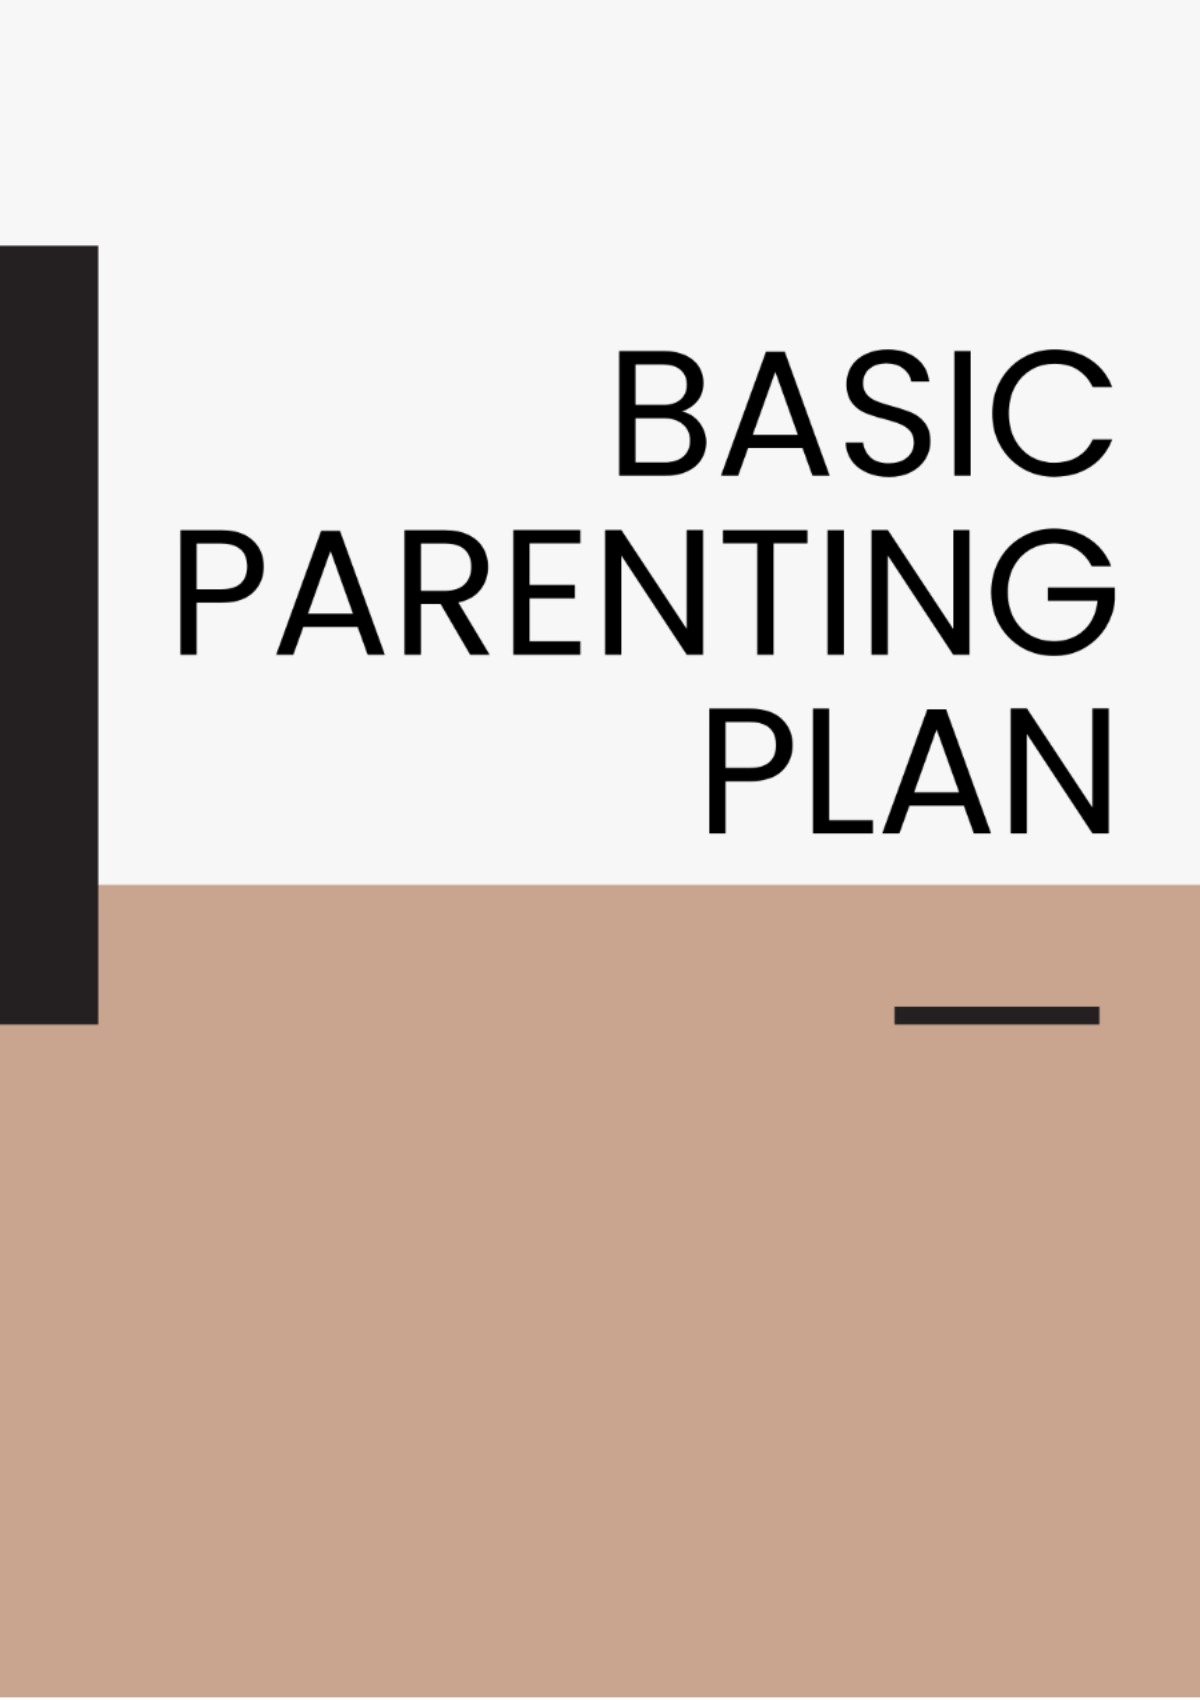 Free Basic Parenting Plan Template